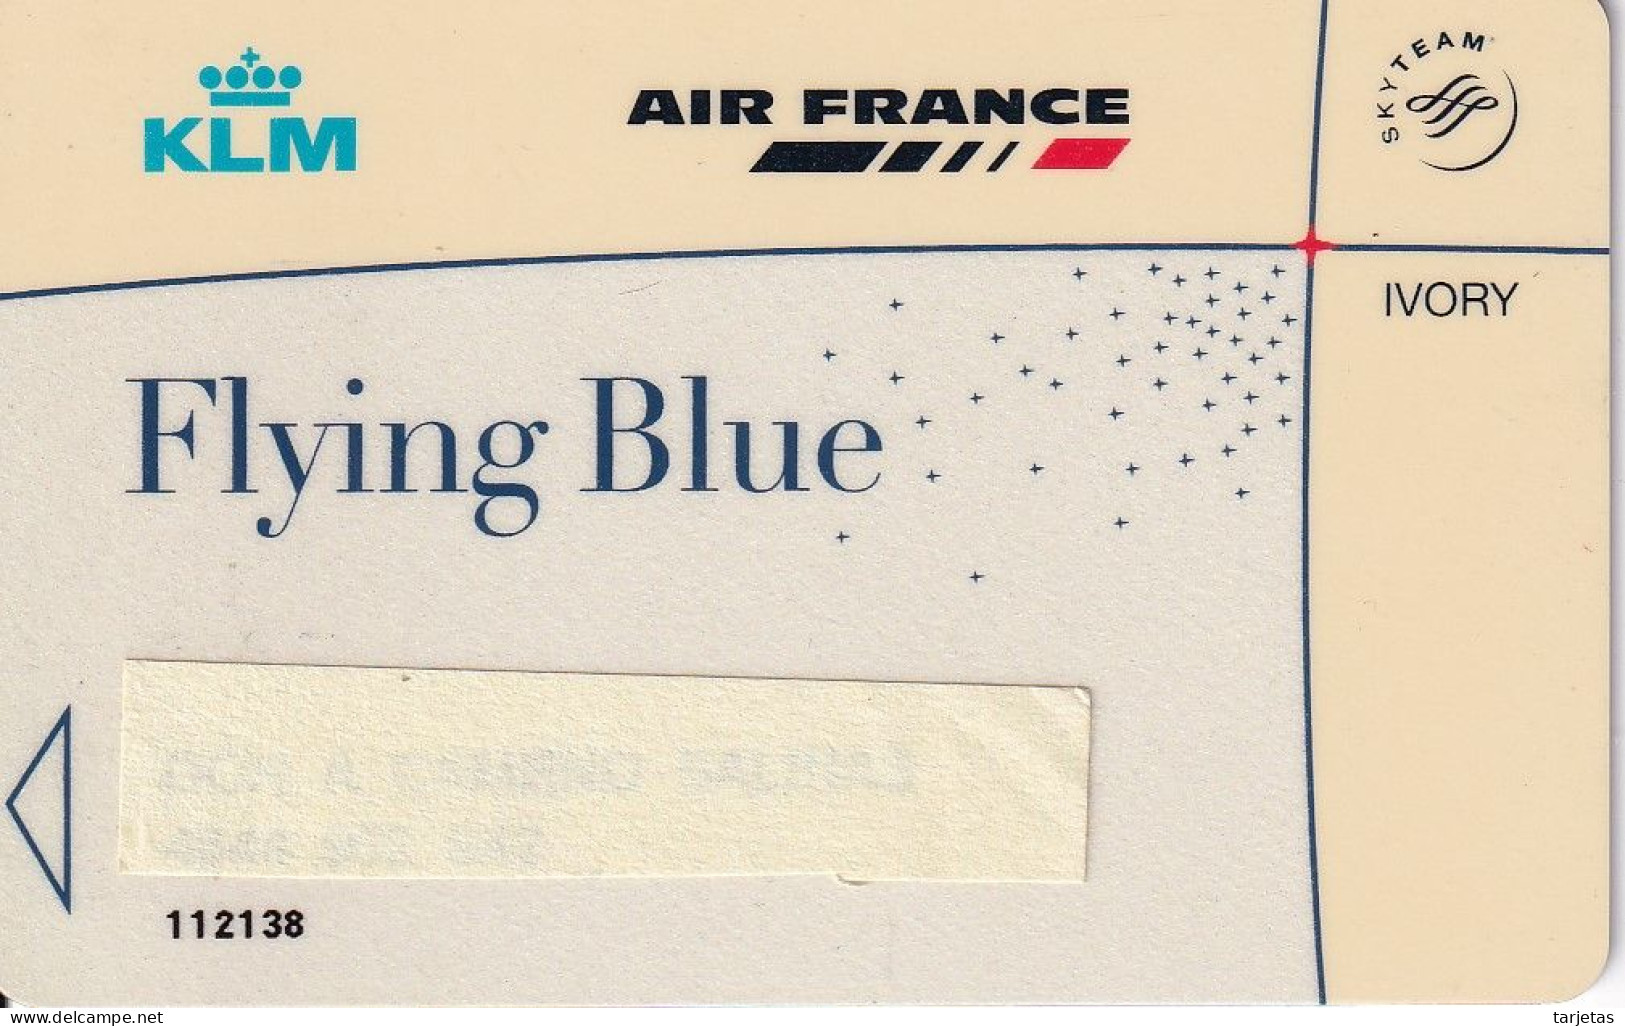 TARJETA DE LA COMPAÑIA AEREA AIR FRANCE Y KLM  (IVORY) - Avions